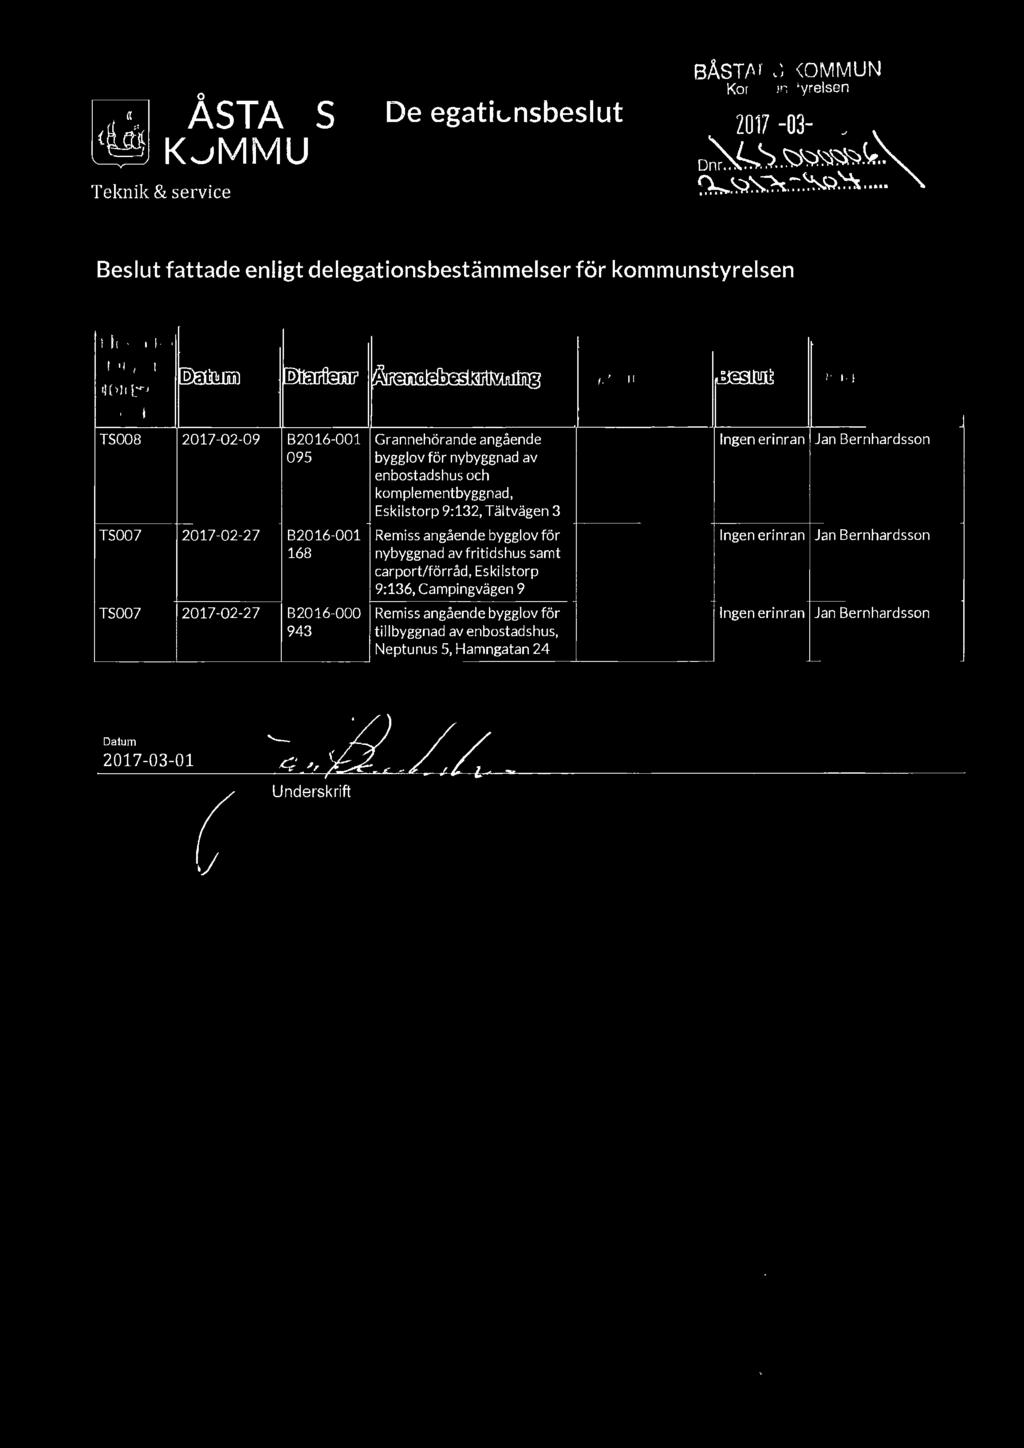 Tältvägen 3 TS007 2017-02-27 B2016-001 Remiss angående bygglov för Ingen erinran Jan Bernhardsson 168 nybyggnad av fritidshus samt carport/förråd, Eskilstorp